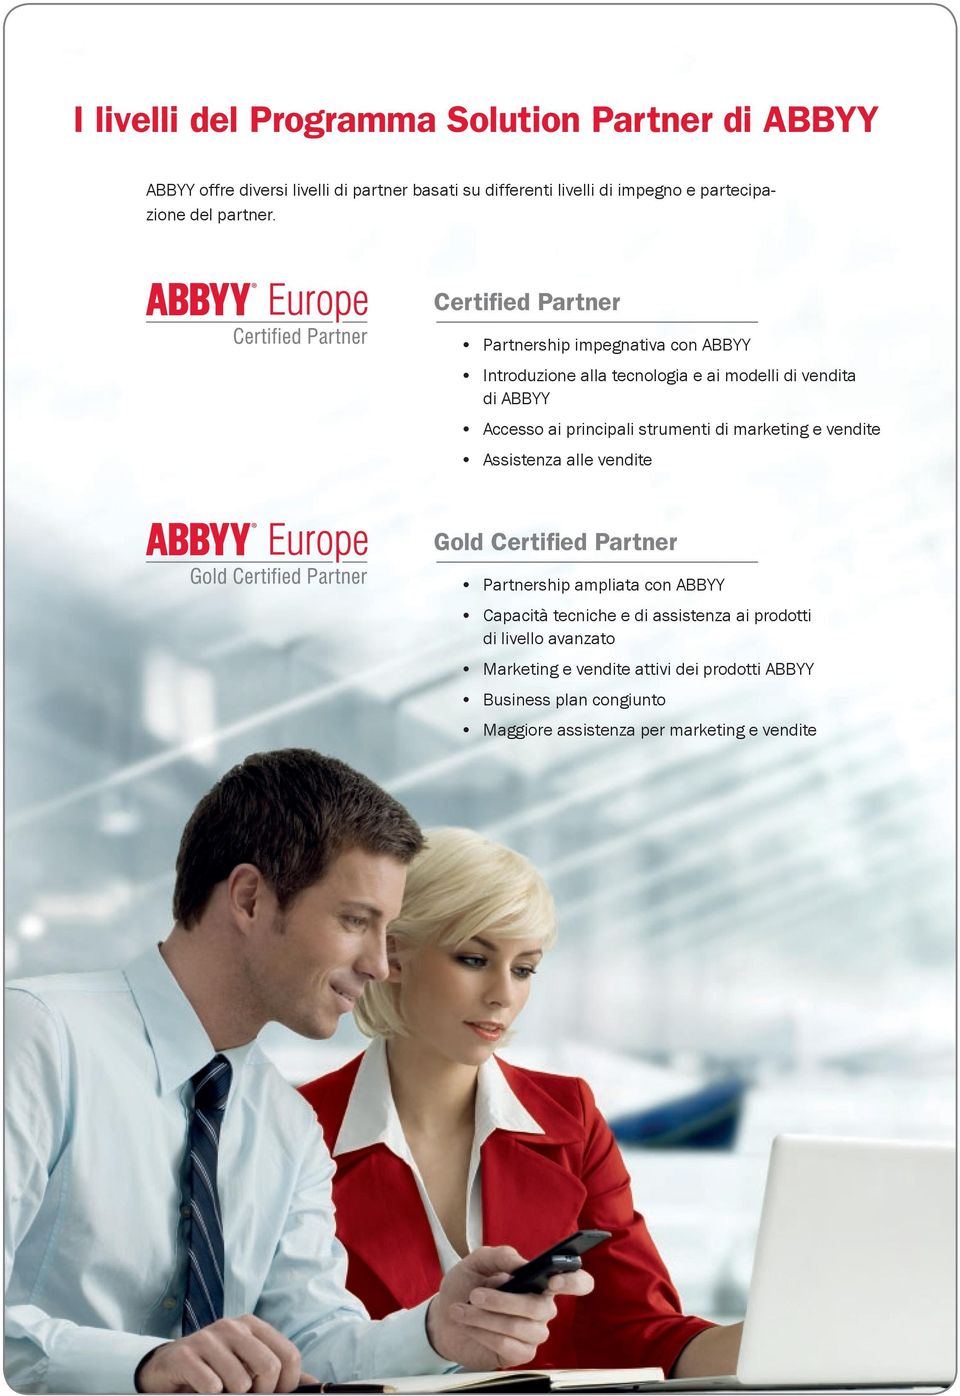 Certified Partner Partnership impegnativa con ABBYY Introduzione alla tecnologia e ai modelli di vendita di ABBYY Accesso ai principali strumenti